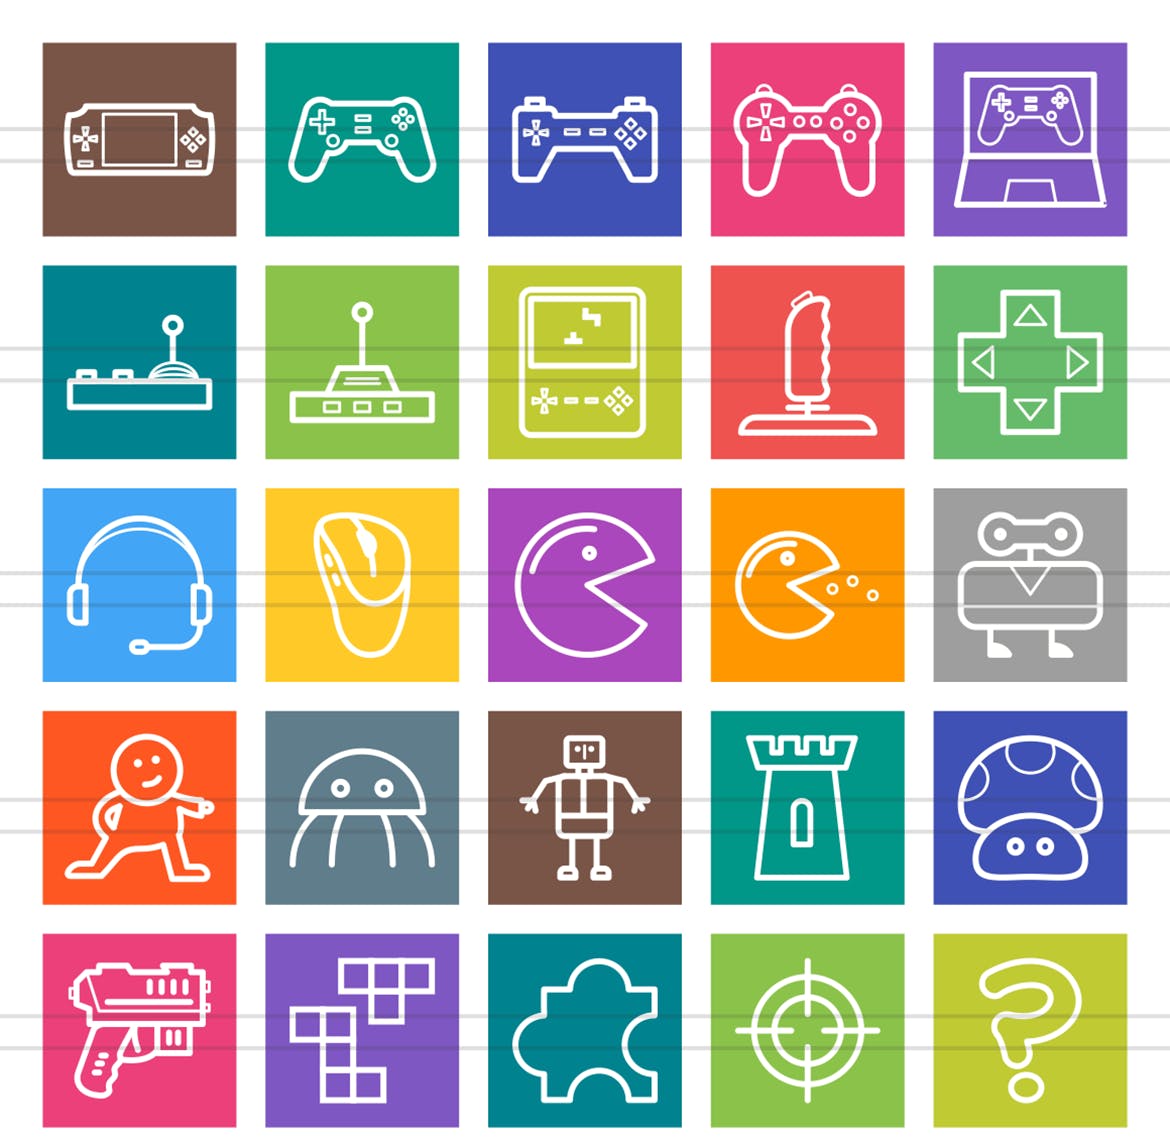 50枚游戏和娱乐主题多彩线条线图标素材 50 Games & Entertainment Line Multicolor Icons插图(1)